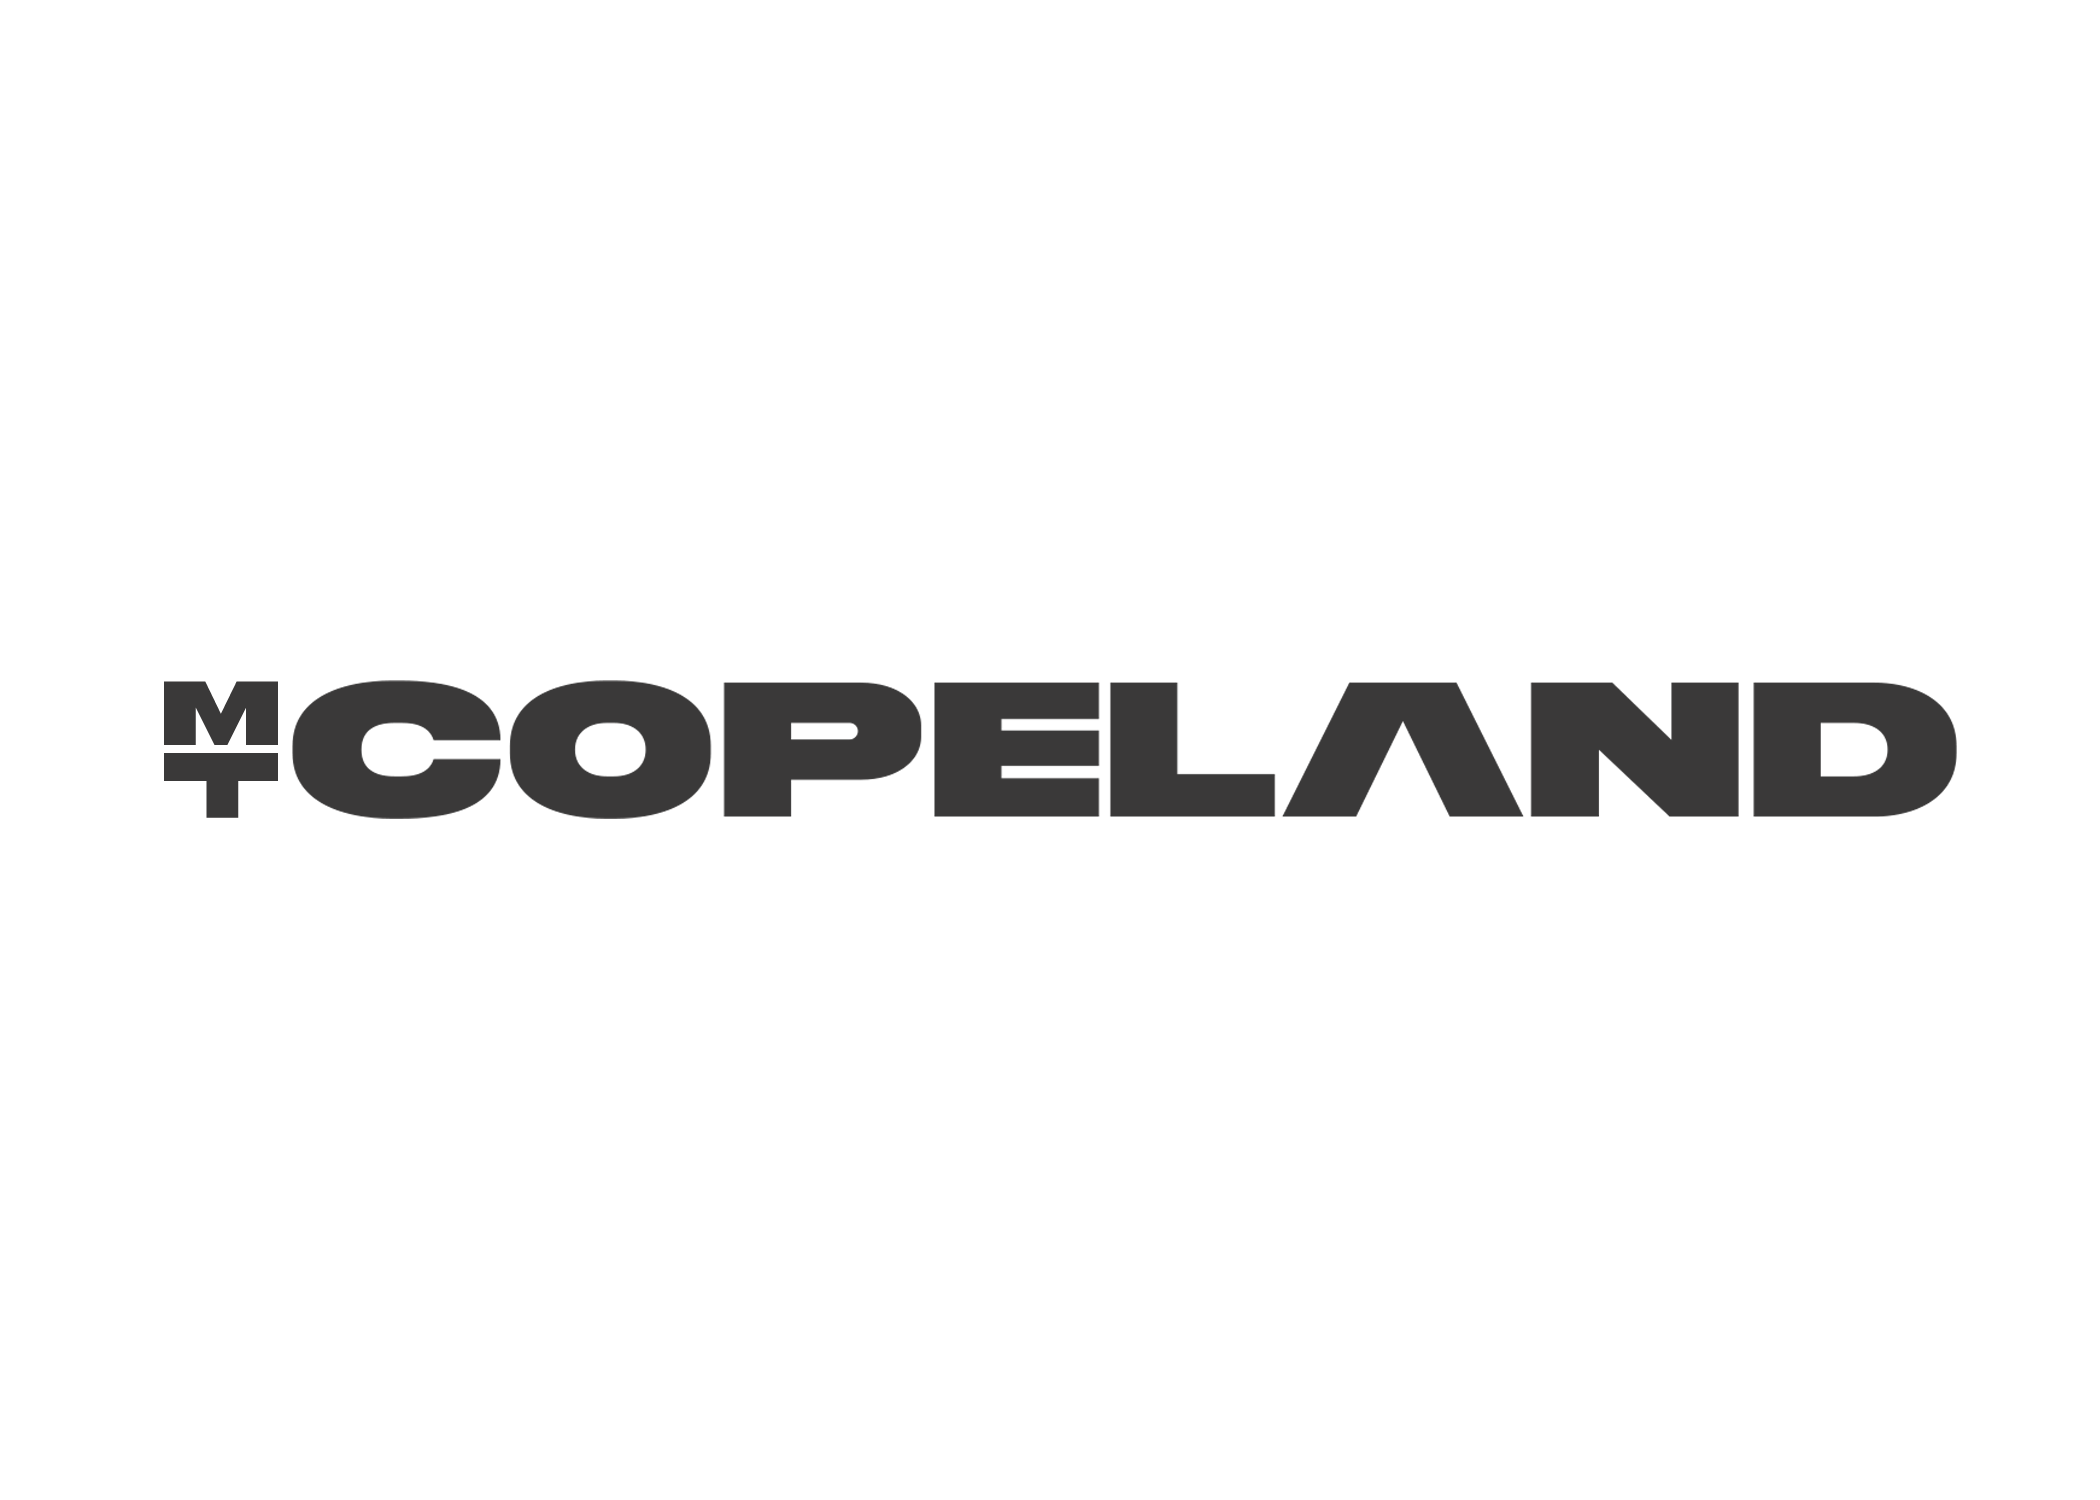 copeland 2021 logo flat